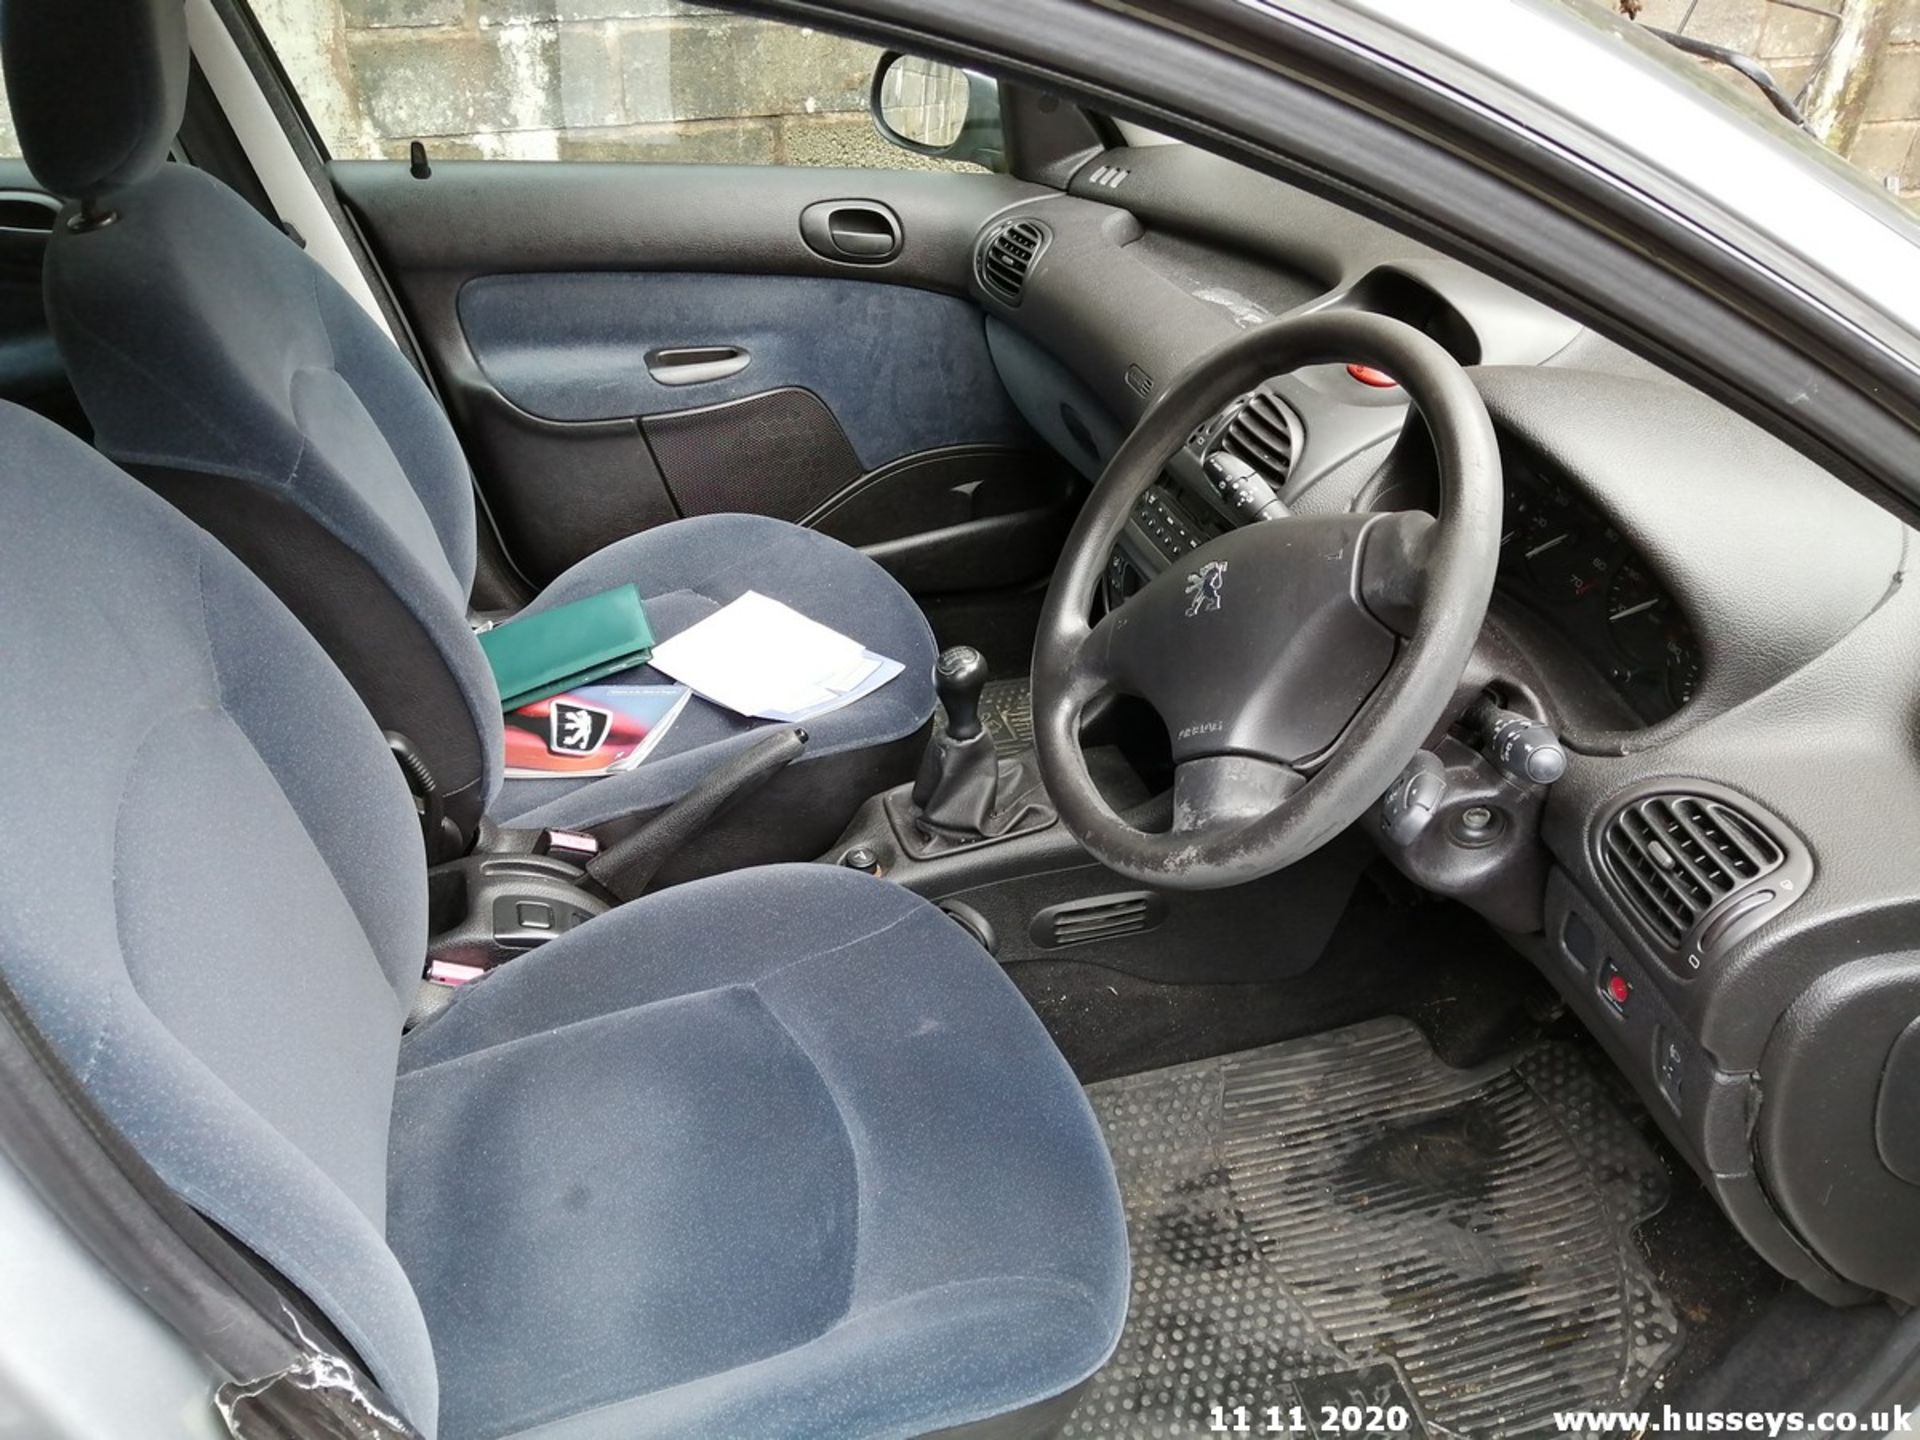 02/02 PEUGEOT 206 GLX - 1587cc 5dr Hatchback (Silver, 56k) - Image 10 of 12